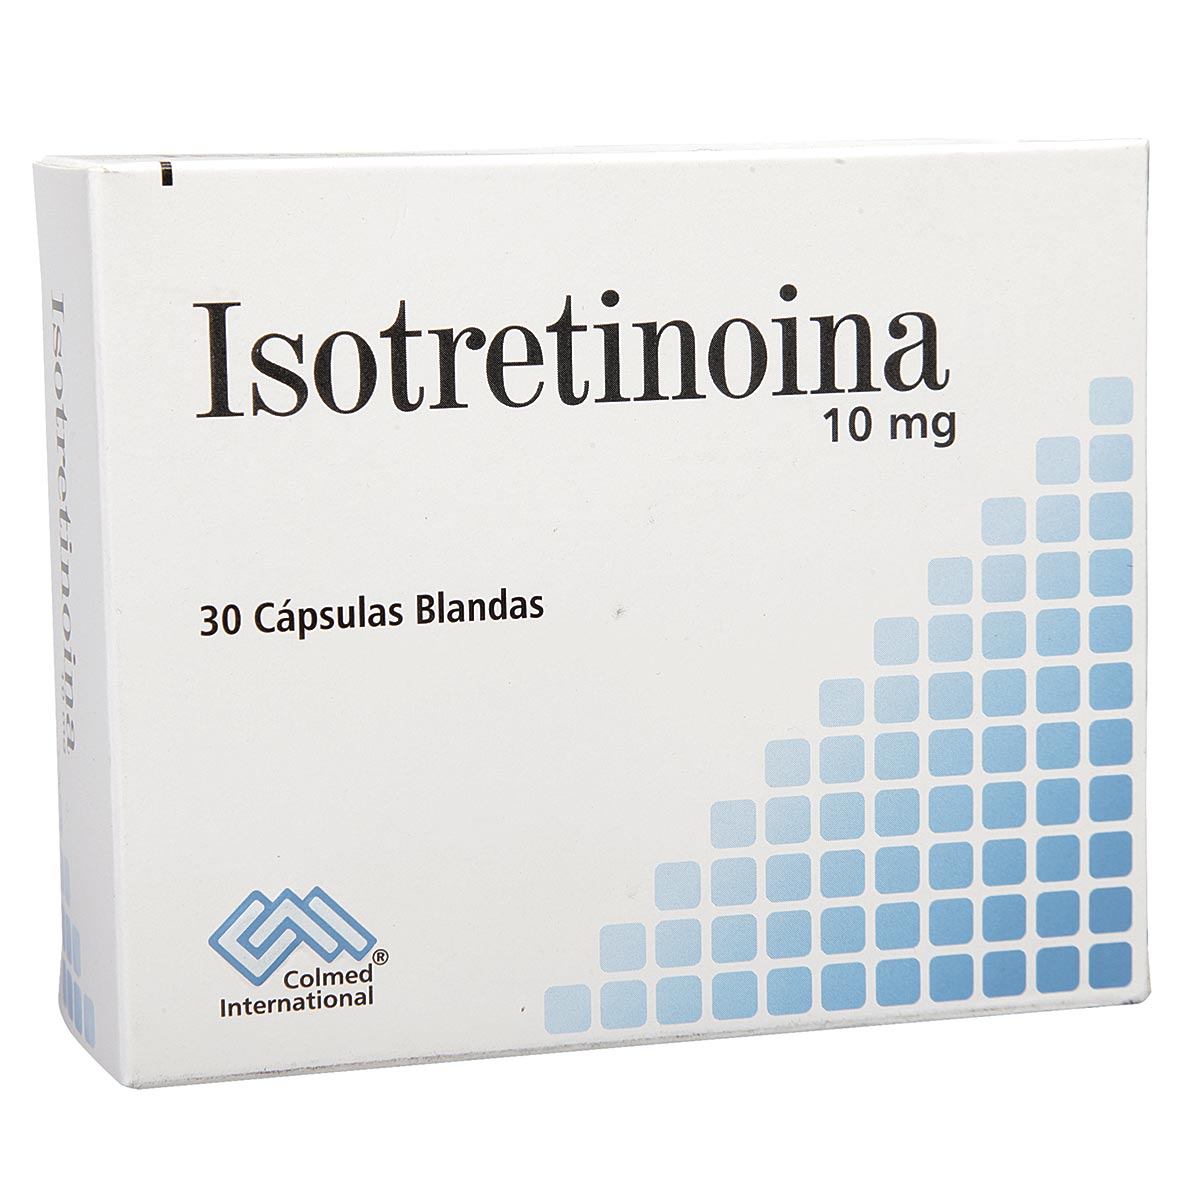 Isotretinoina: ¿Qué es y para qué sirve?